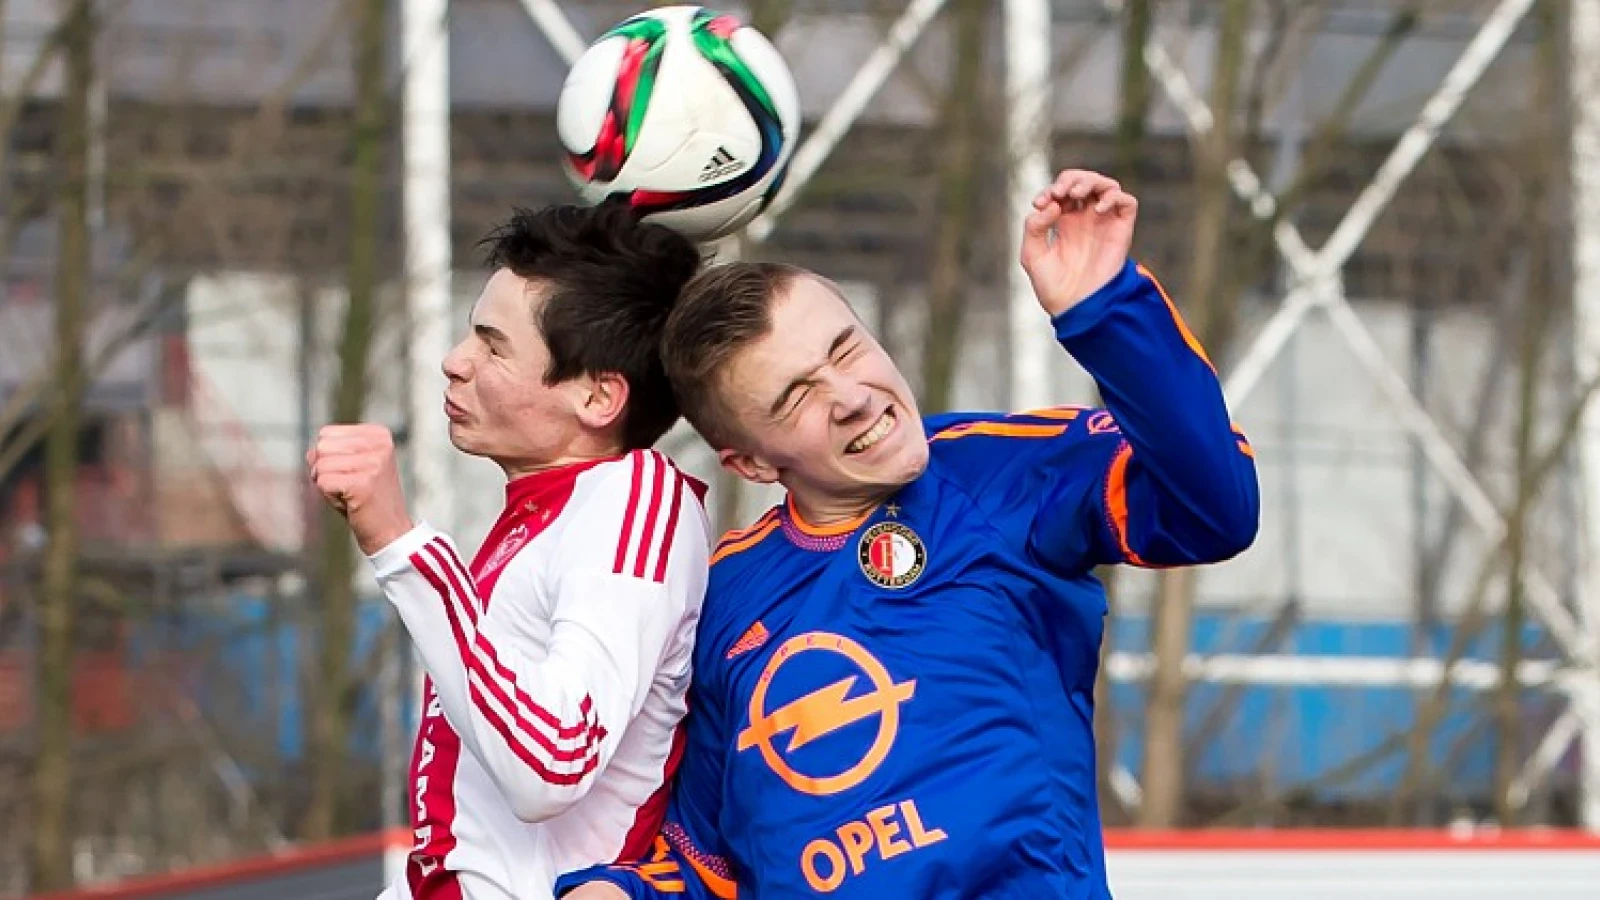 Vente toont respect naar teamgenoten: 'Voetbal is nog steeds een teamsport'